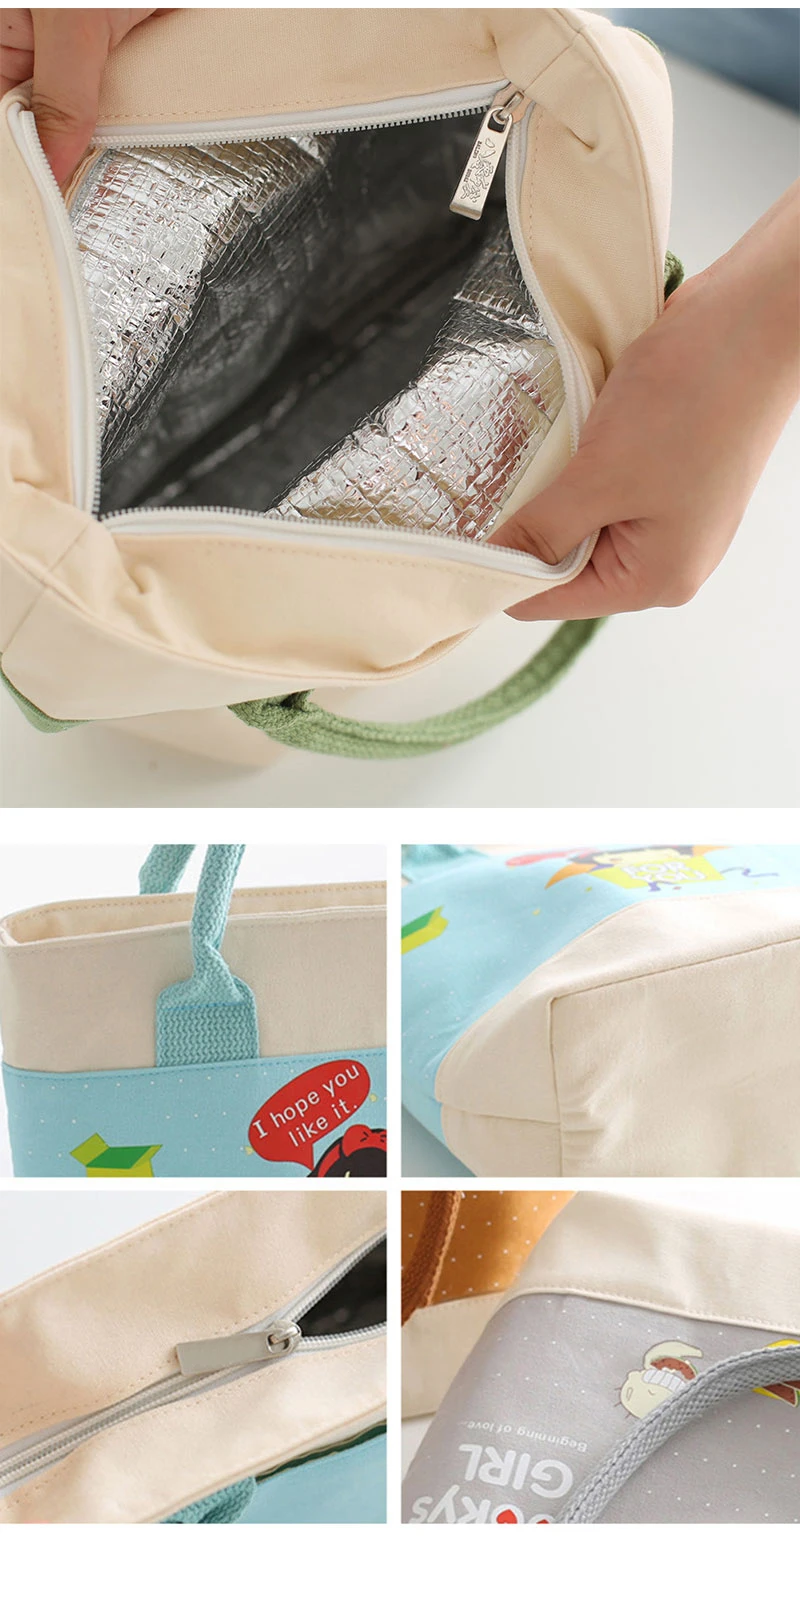 Aosbos Мультяшные термоизолированные сумки для обедов для студенток, милая сумка-Органайзер для еды, Портативная сумка-холодильник для маленькой девочки